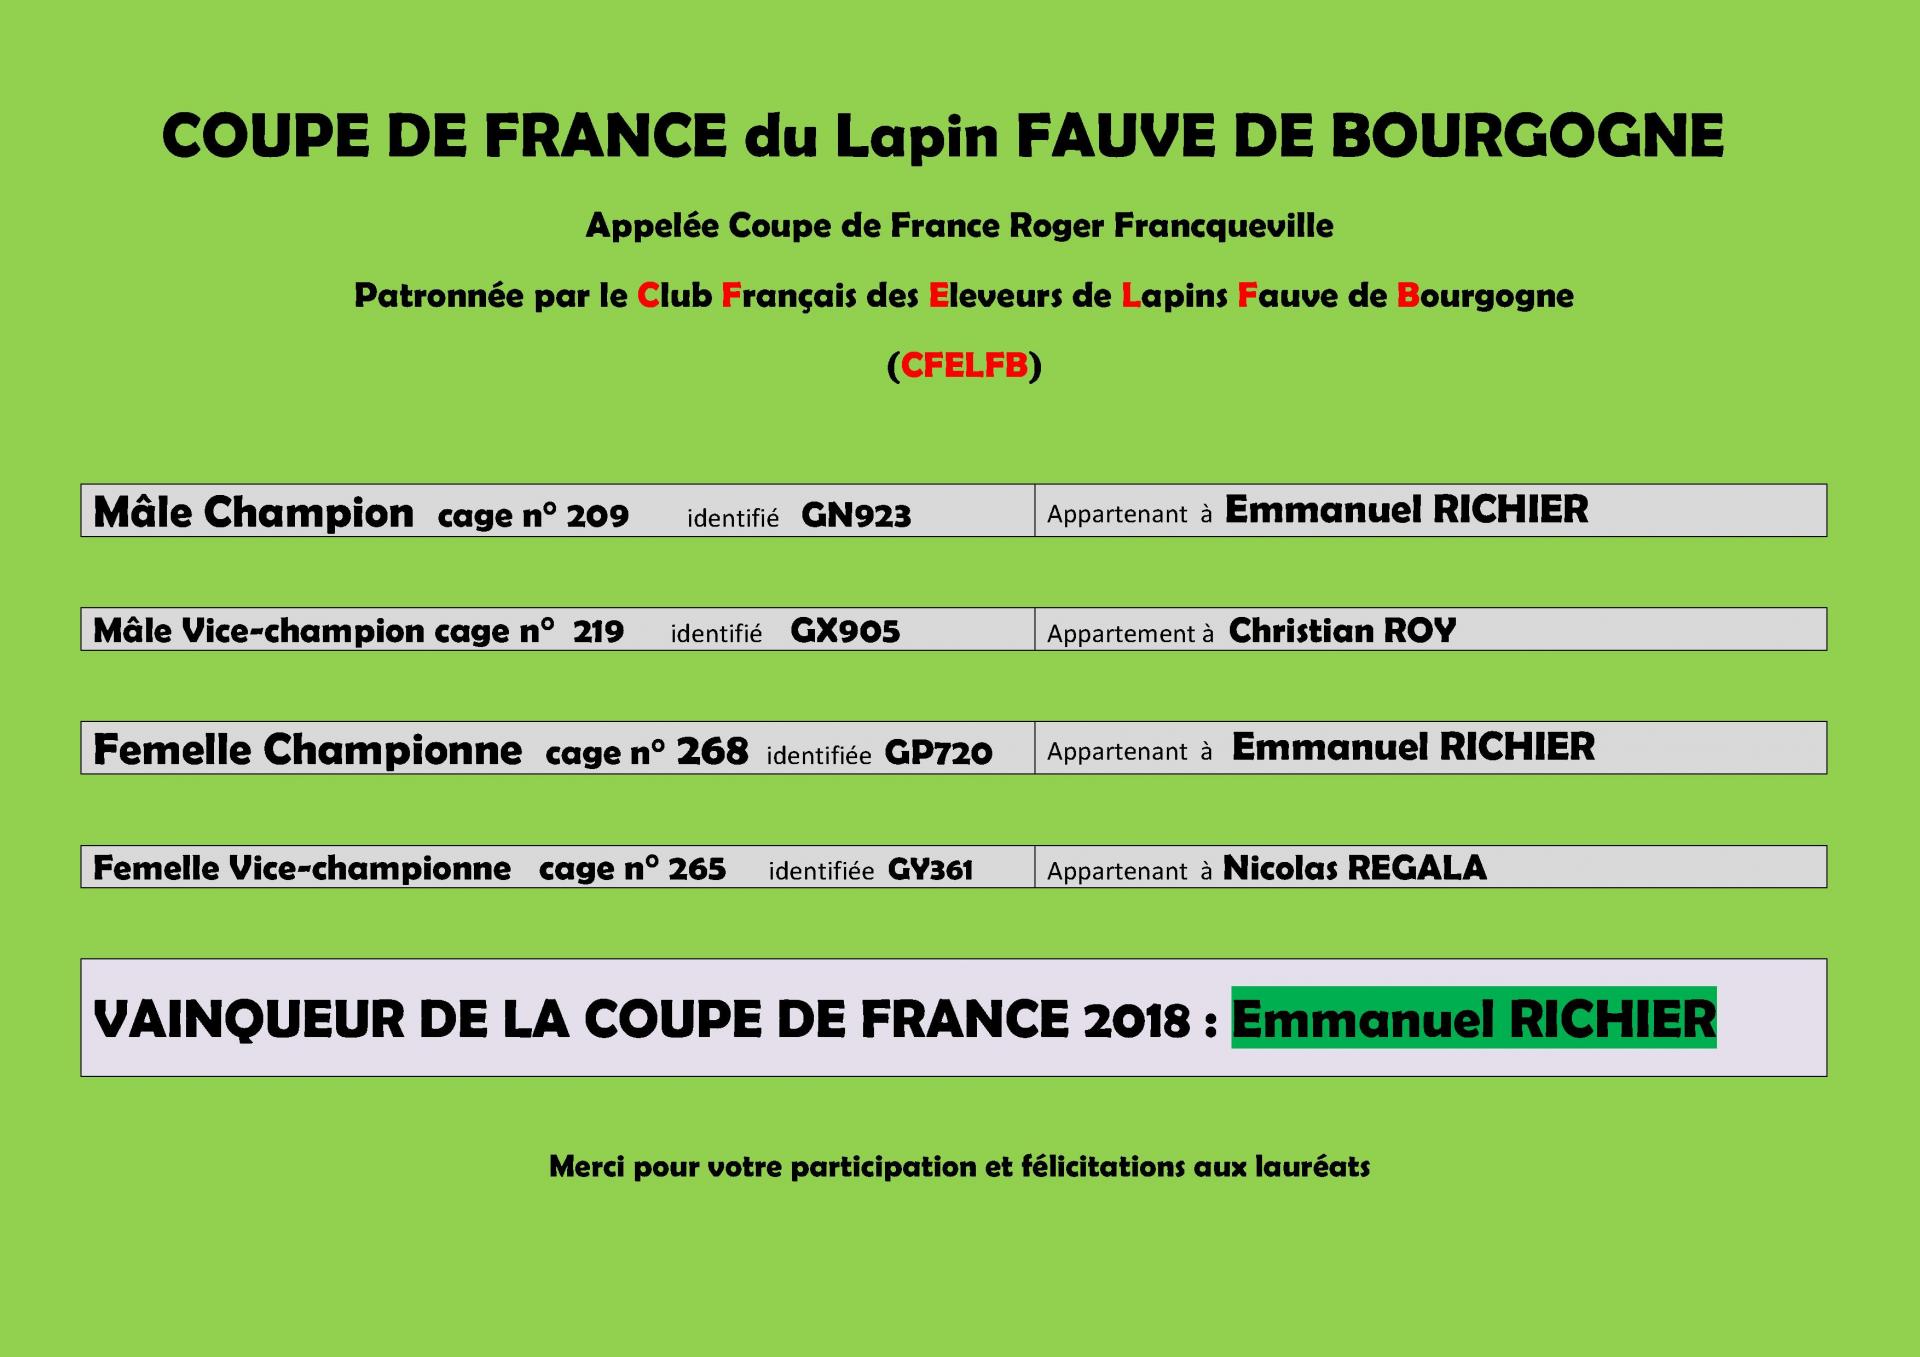 Resultats coupe de france du lapin fauve de bourgogne 2018